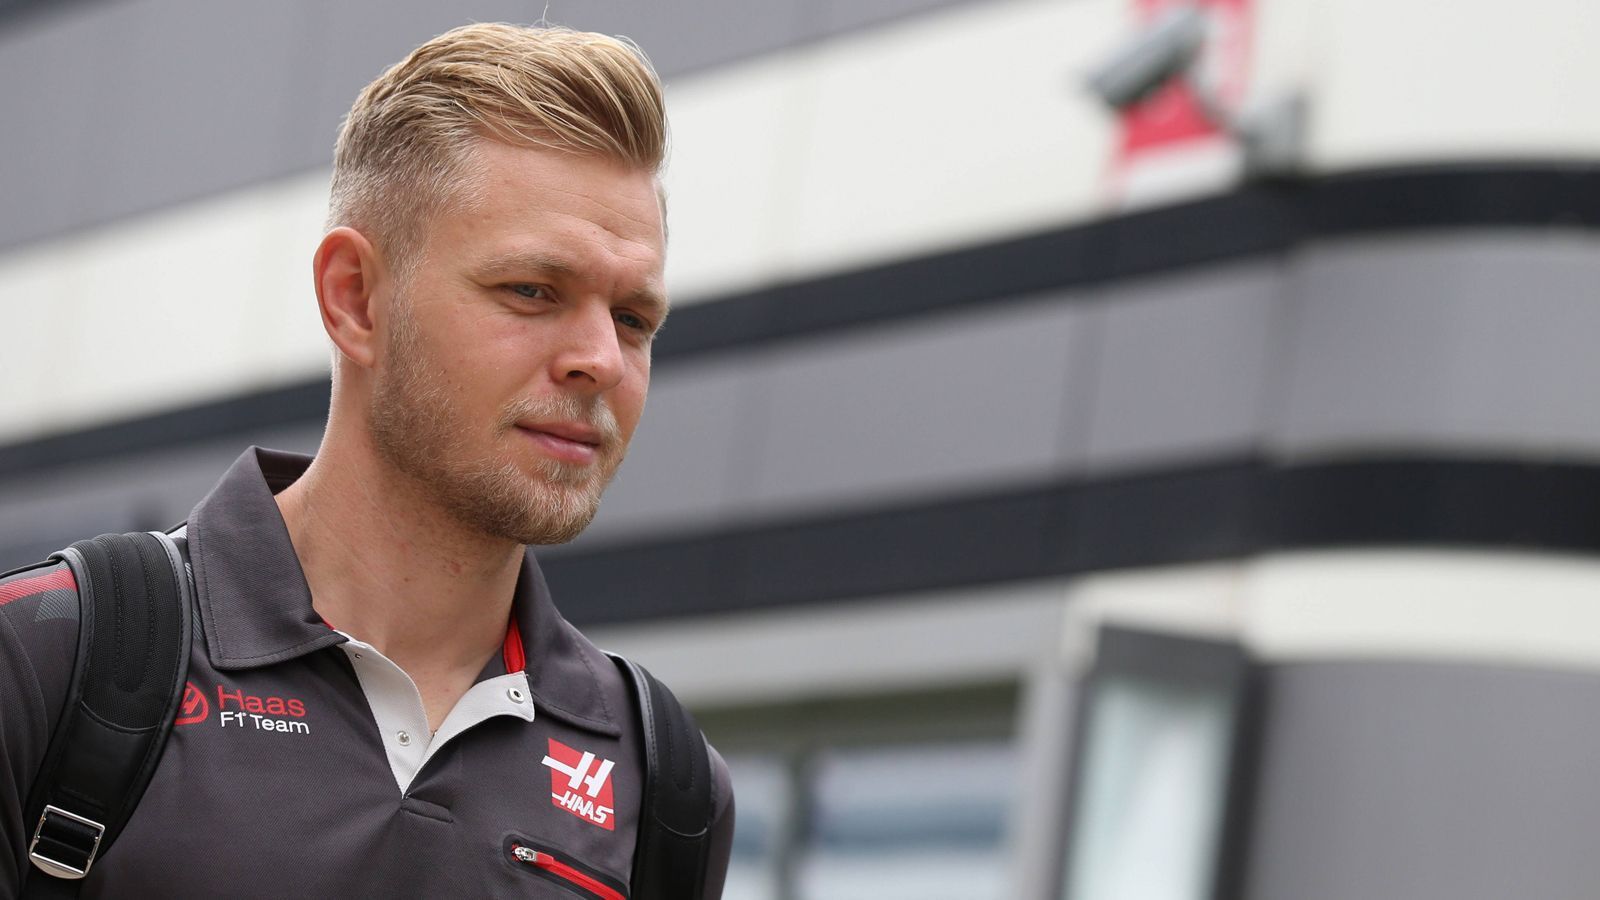 
                <strong>Kevin Magnussen (Haas)</strong><br>
                Kevin Magnussen. Sein Vertrag gilt ebenfalls bis 2019. Für den Dänen ist es seine sechste Formel-1-Saison, seine Dritte für das Haas-F1-Team. Aber auch seine Letzte?
              